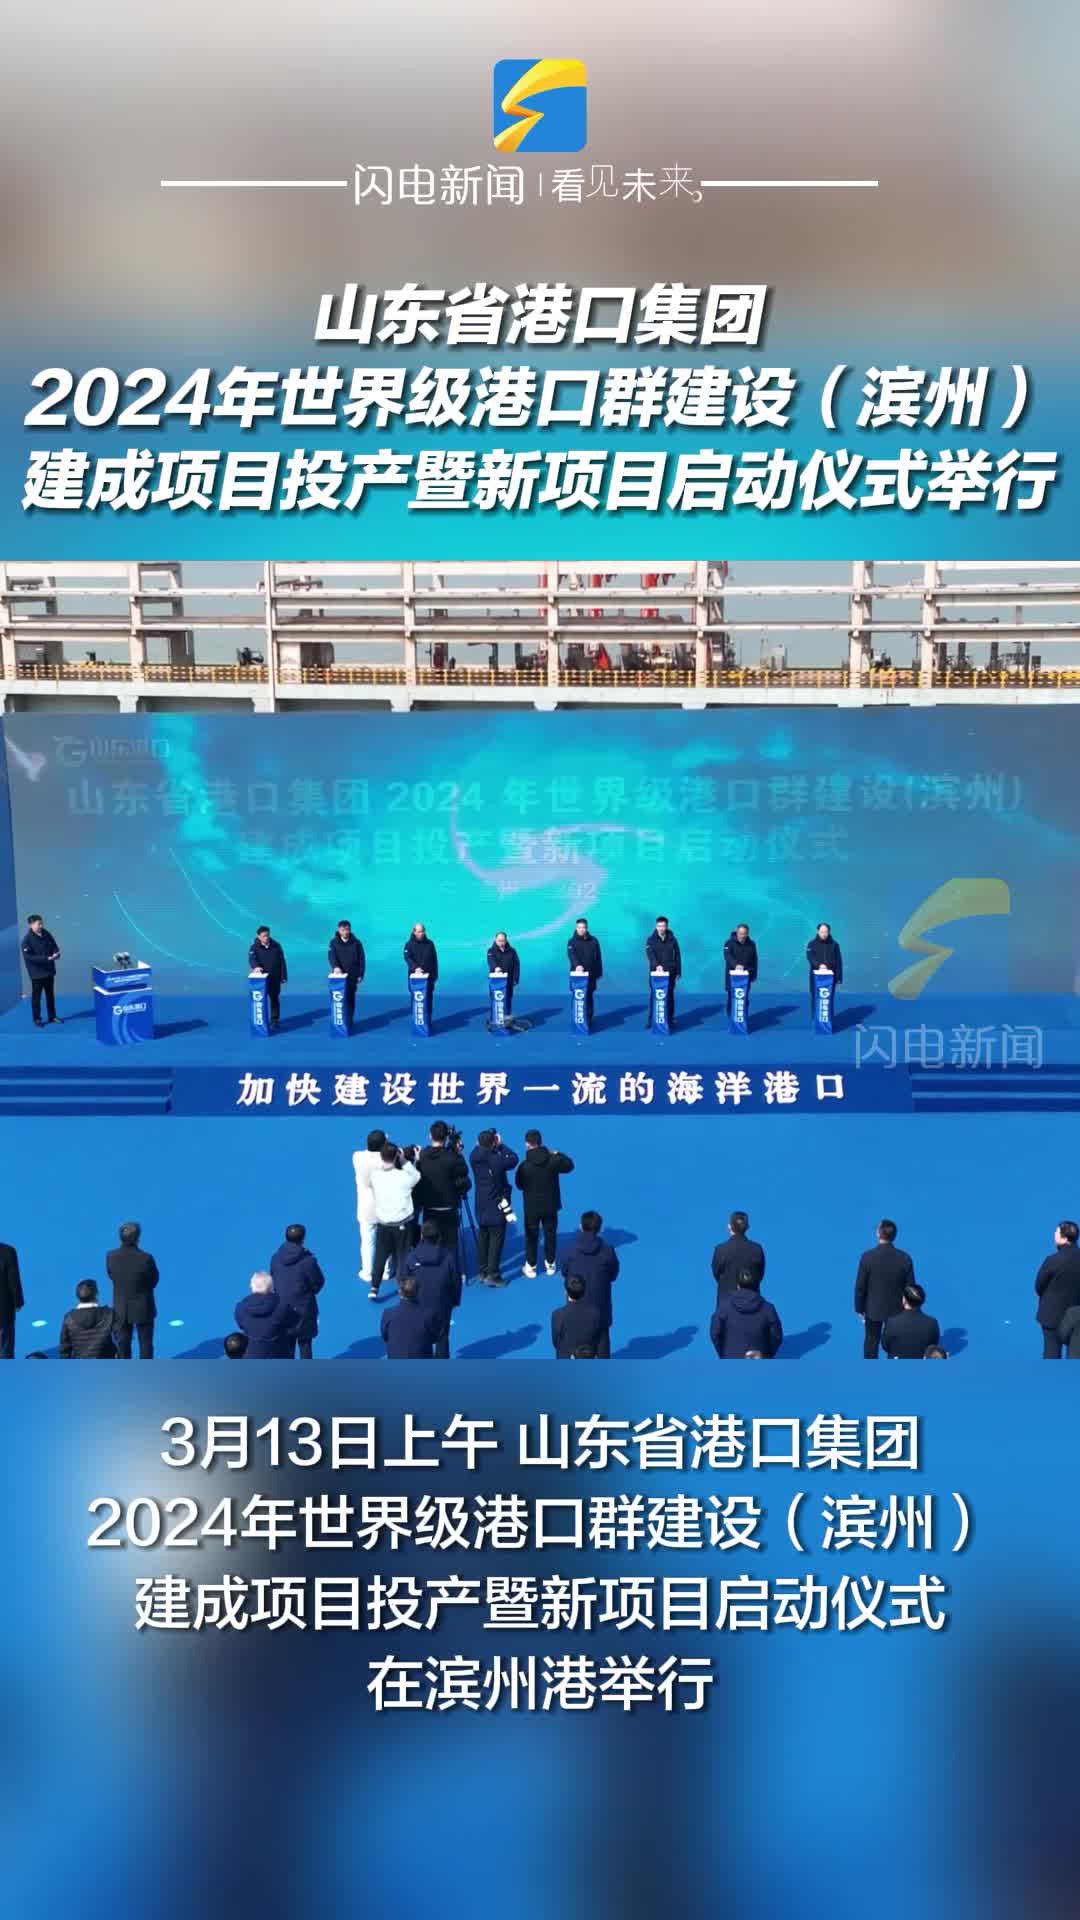 山东省港口集团2024年世界级港口群建设（滨州）建成项目投产暨新项目启动仪式举行